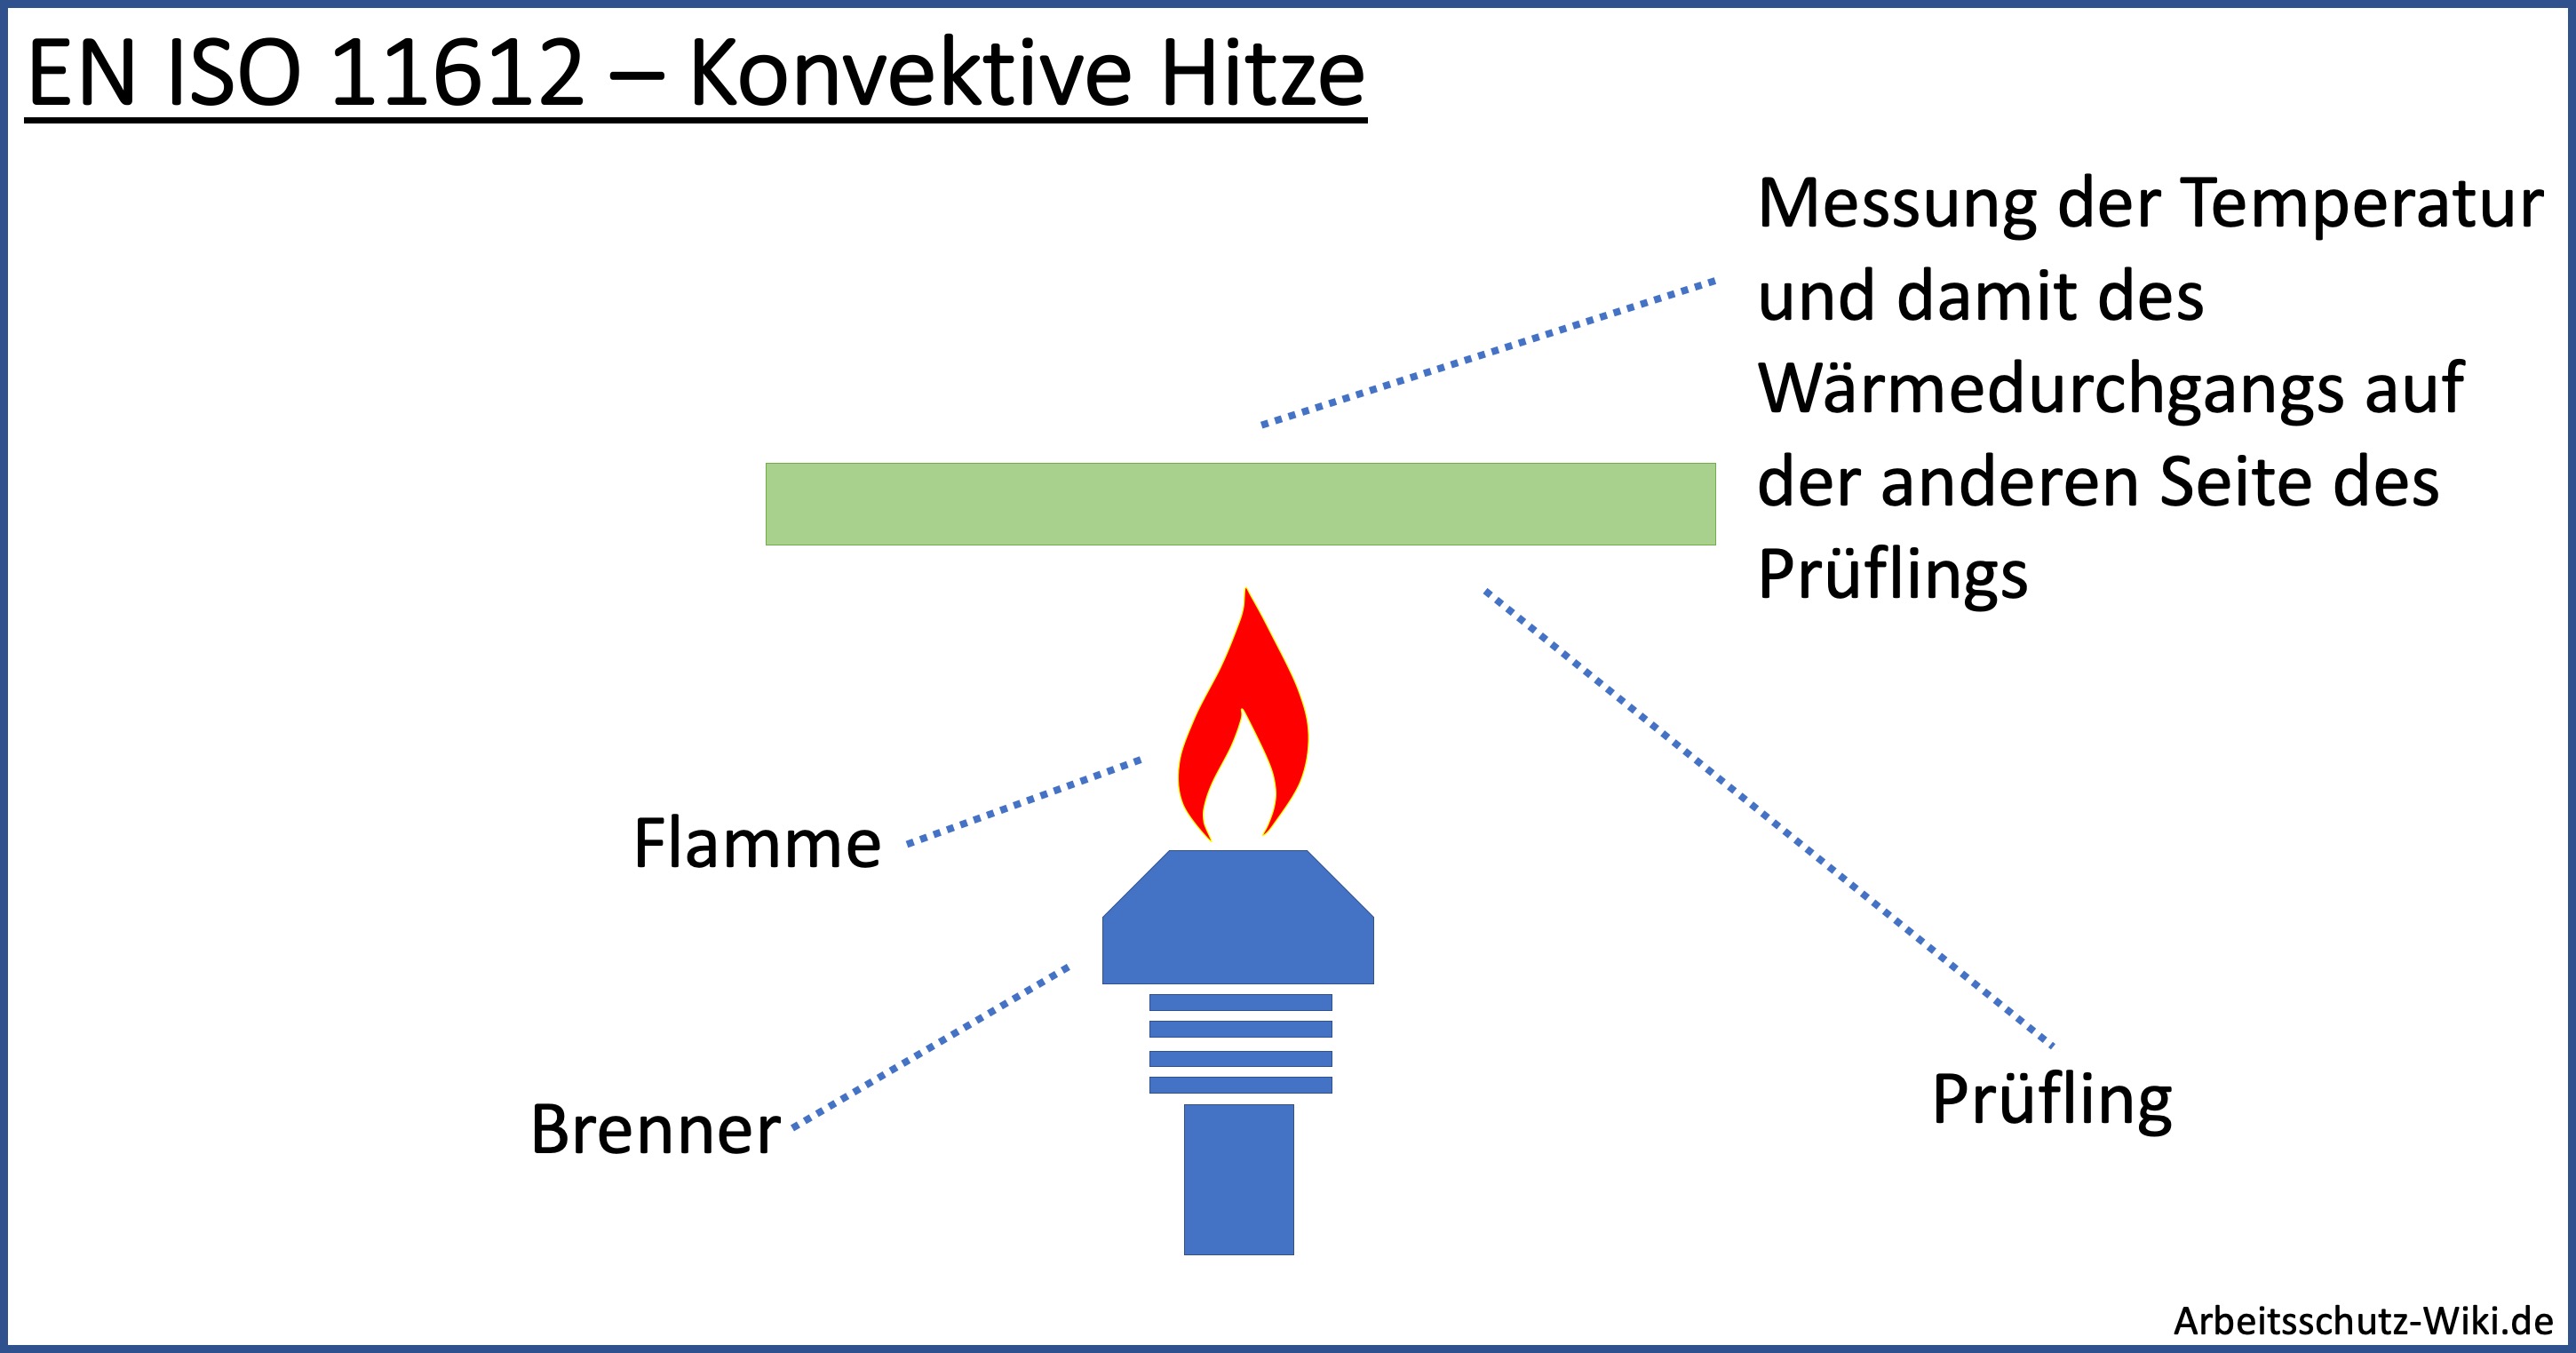 EN ISO 11612 – Konvektive Hitze - Die Grafik zeigt eine Flamme, die von unten auf einen Prüfling aus Gewebe gerichtet ist. Dabei wird dem Gewebe starke Hitze mit einer offenen Flamme zugefügt. Auf der anderen Seite des Gewebes findet eine Temperatur Messung statt. Der Anstieg der Temperatur in einer Vorgegebenen Zeit wird ermittelt. Es handelt sich um eine Prüfung der Hitze- und Flammschutz Norm